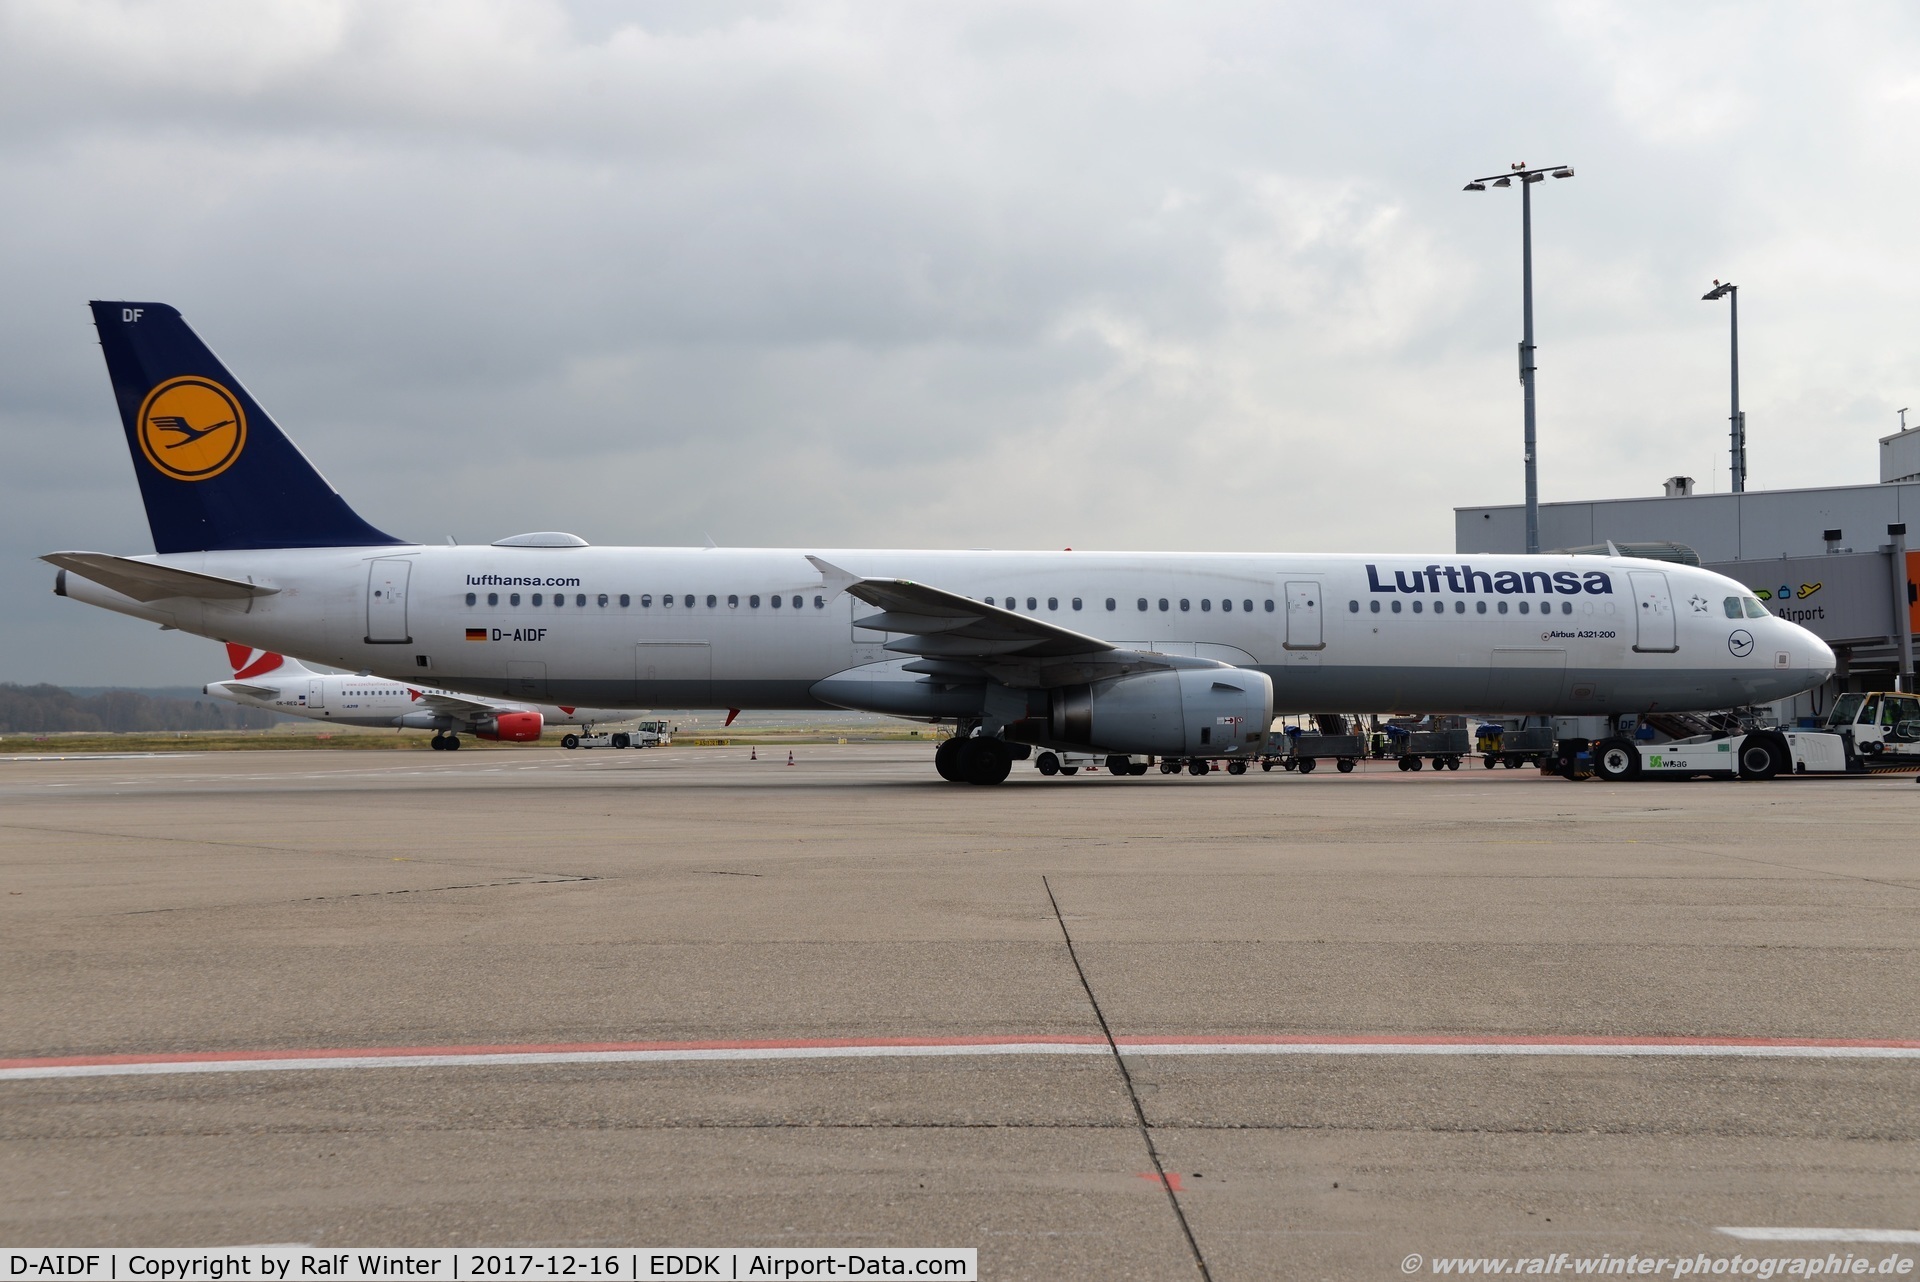 D-AIDF, 2011 Airbus A321-231 C/N 4626, Airbus A321-231 - LH DLH Lufthansa - 4626 - D-AIDF - 16.12.2017 - CGN